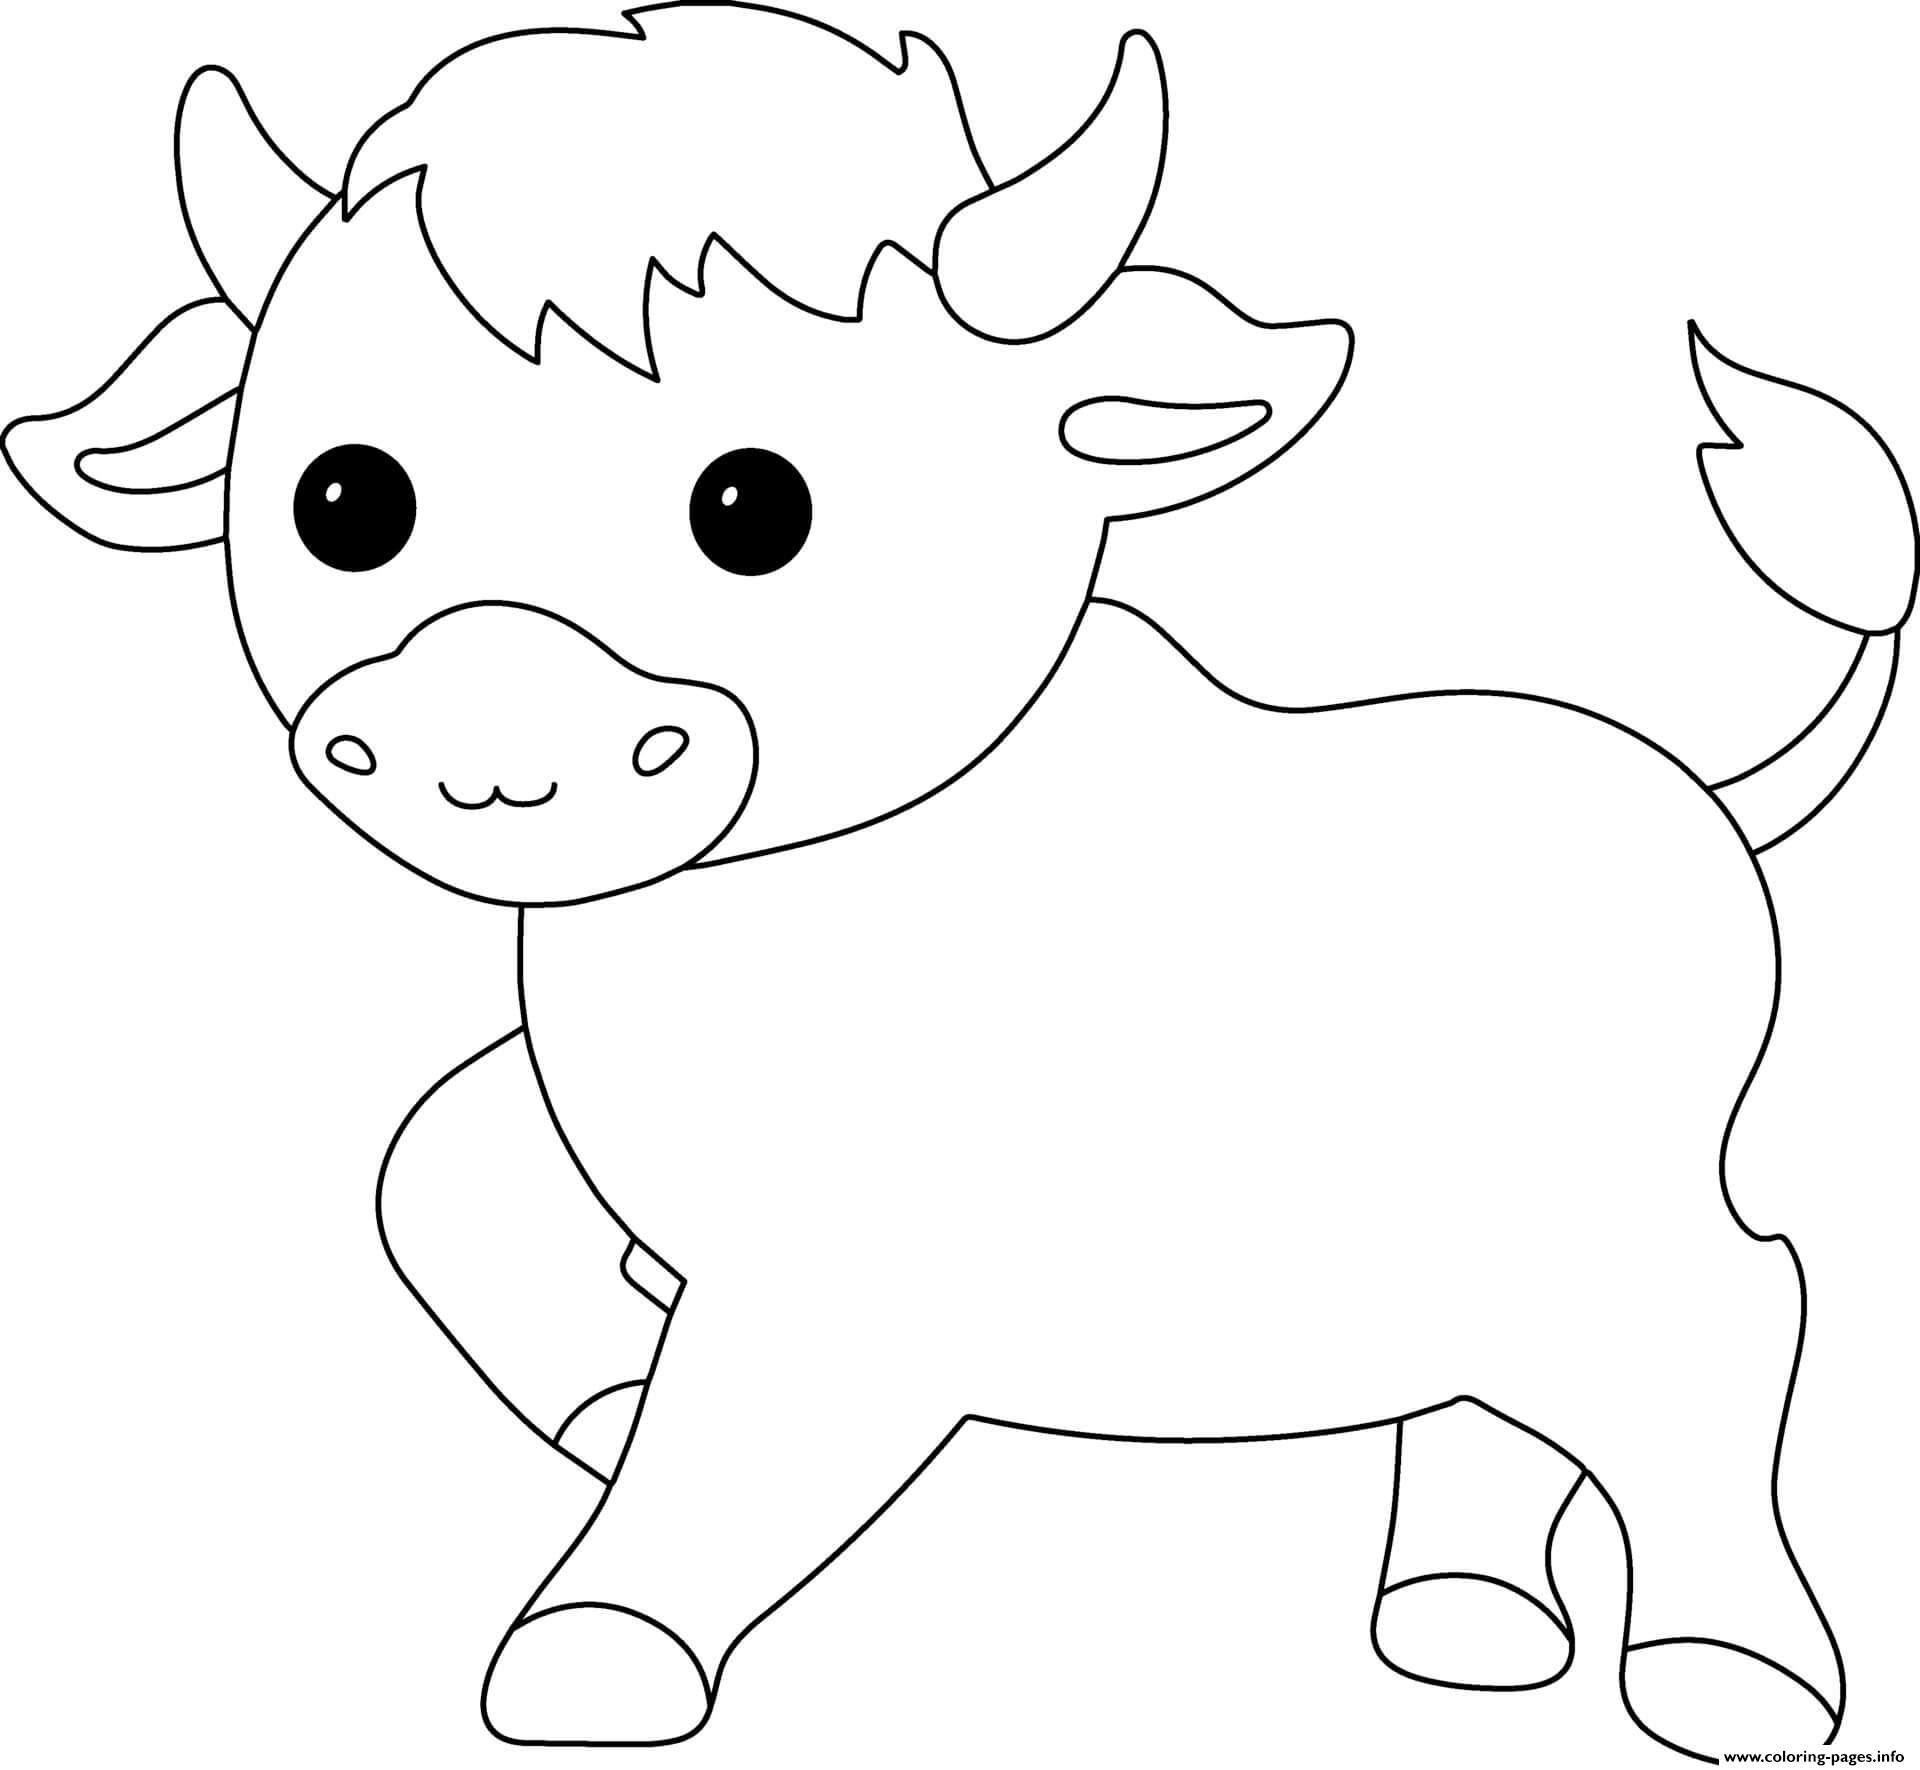 Bull coloring